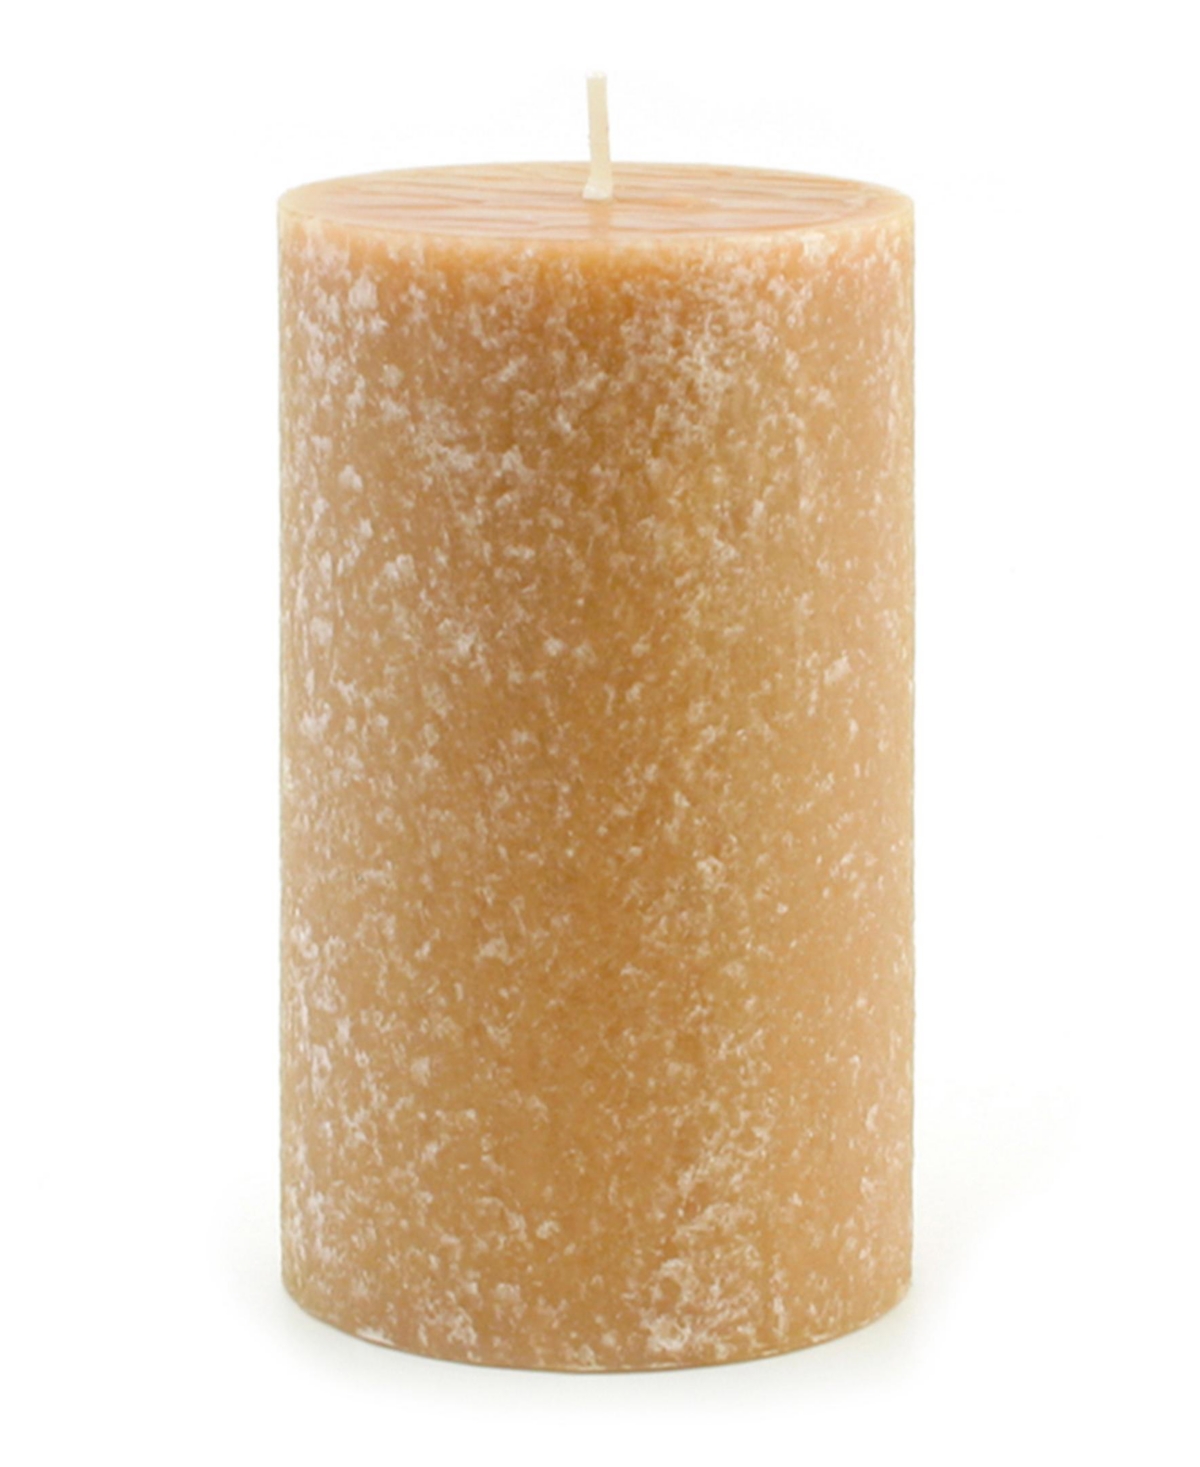 Timberline Pillar Candle, 4" x 6" - Garnet